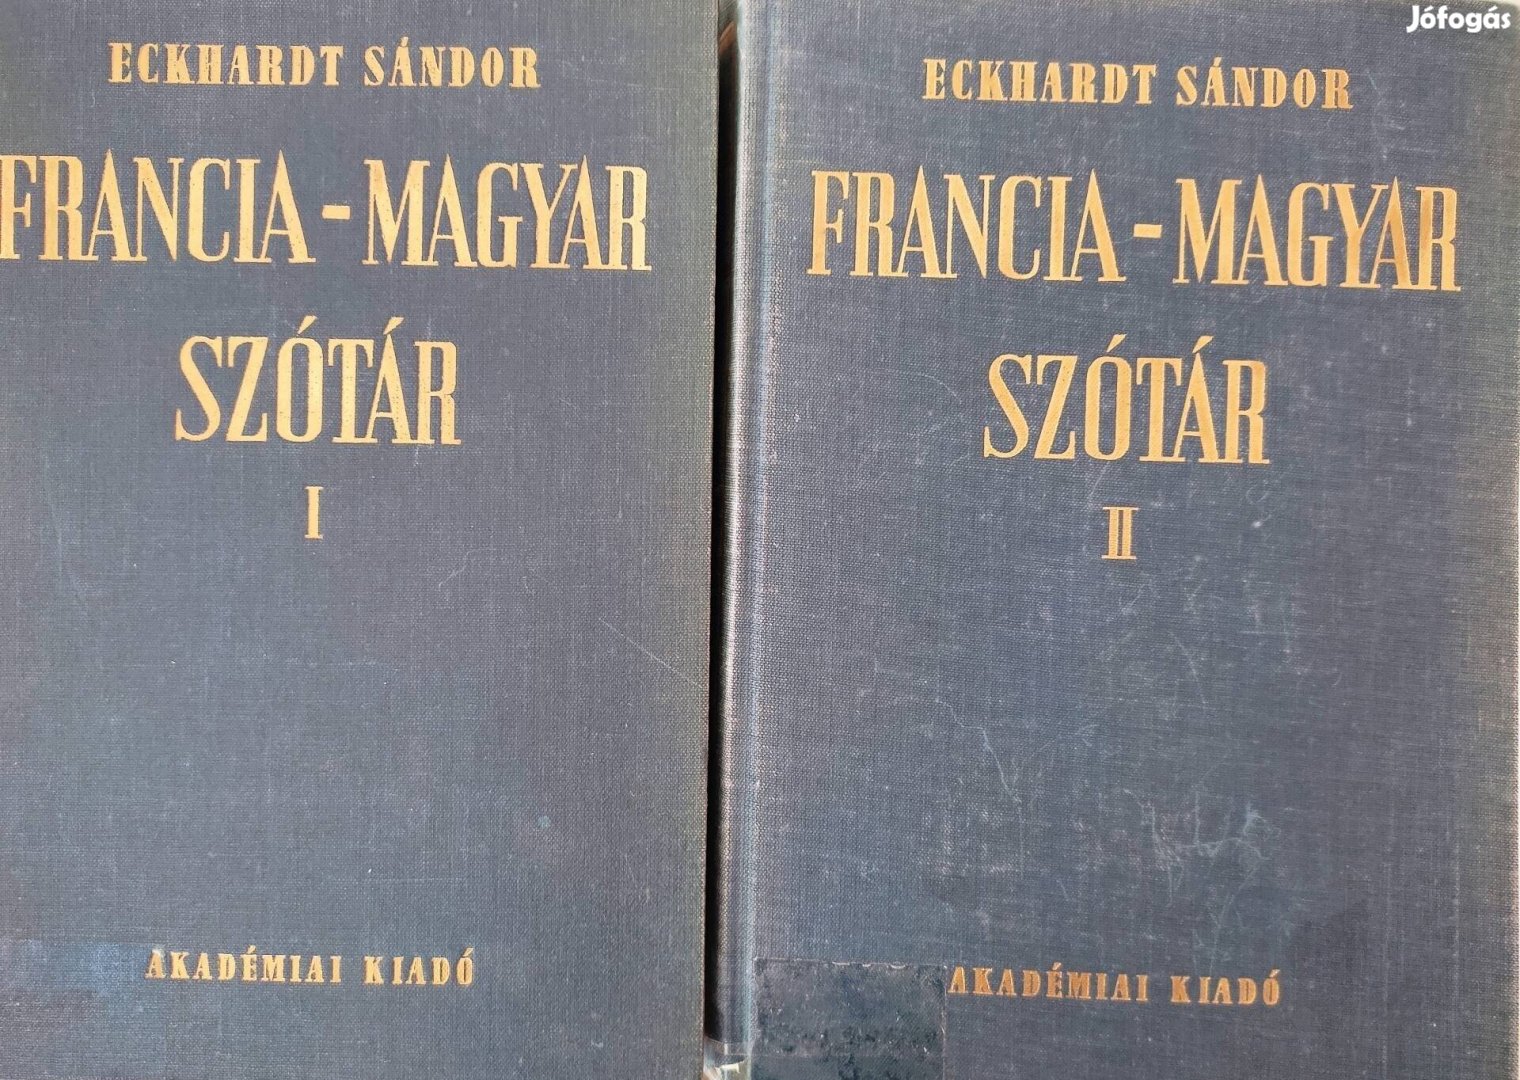 Magyar-francia, francia-magyar nagy szótár 4 kötet 